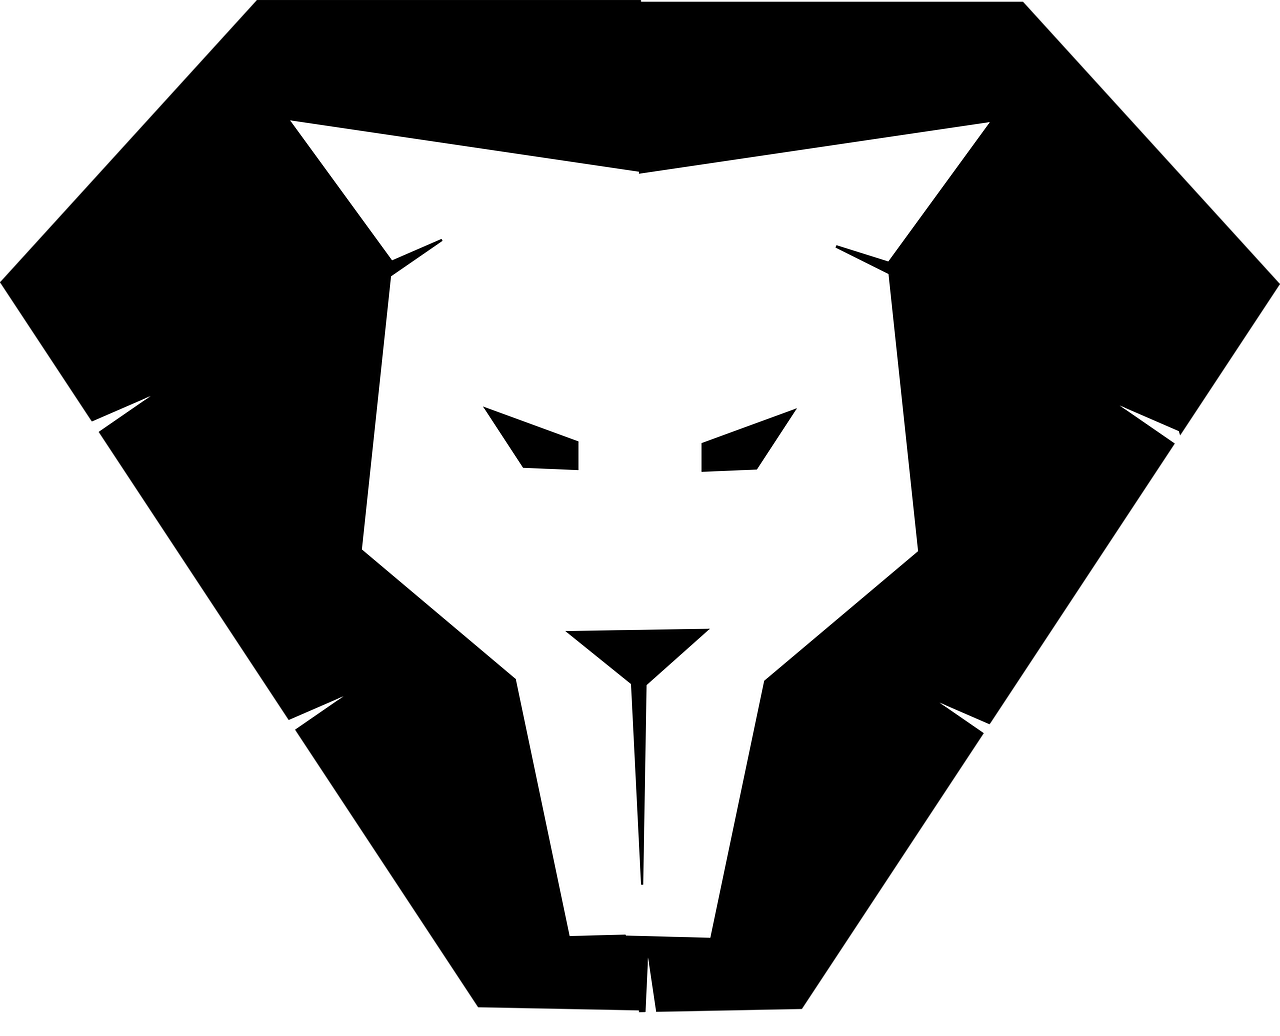 lion silhouette logo free photo